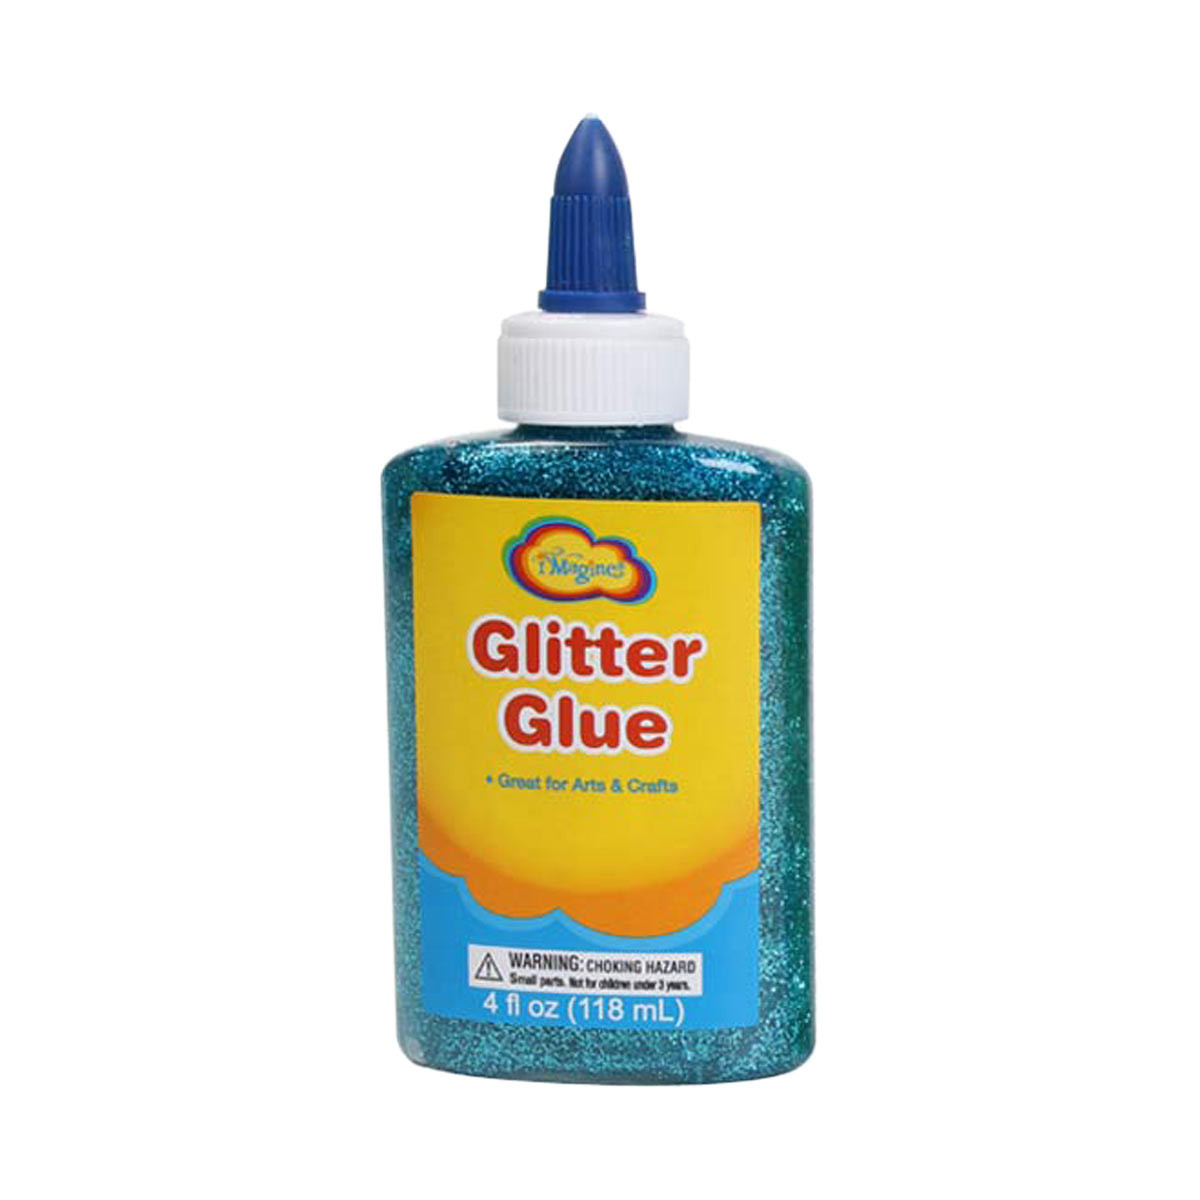 Imagine Glitter Glue Bottle, 4.9 oz.